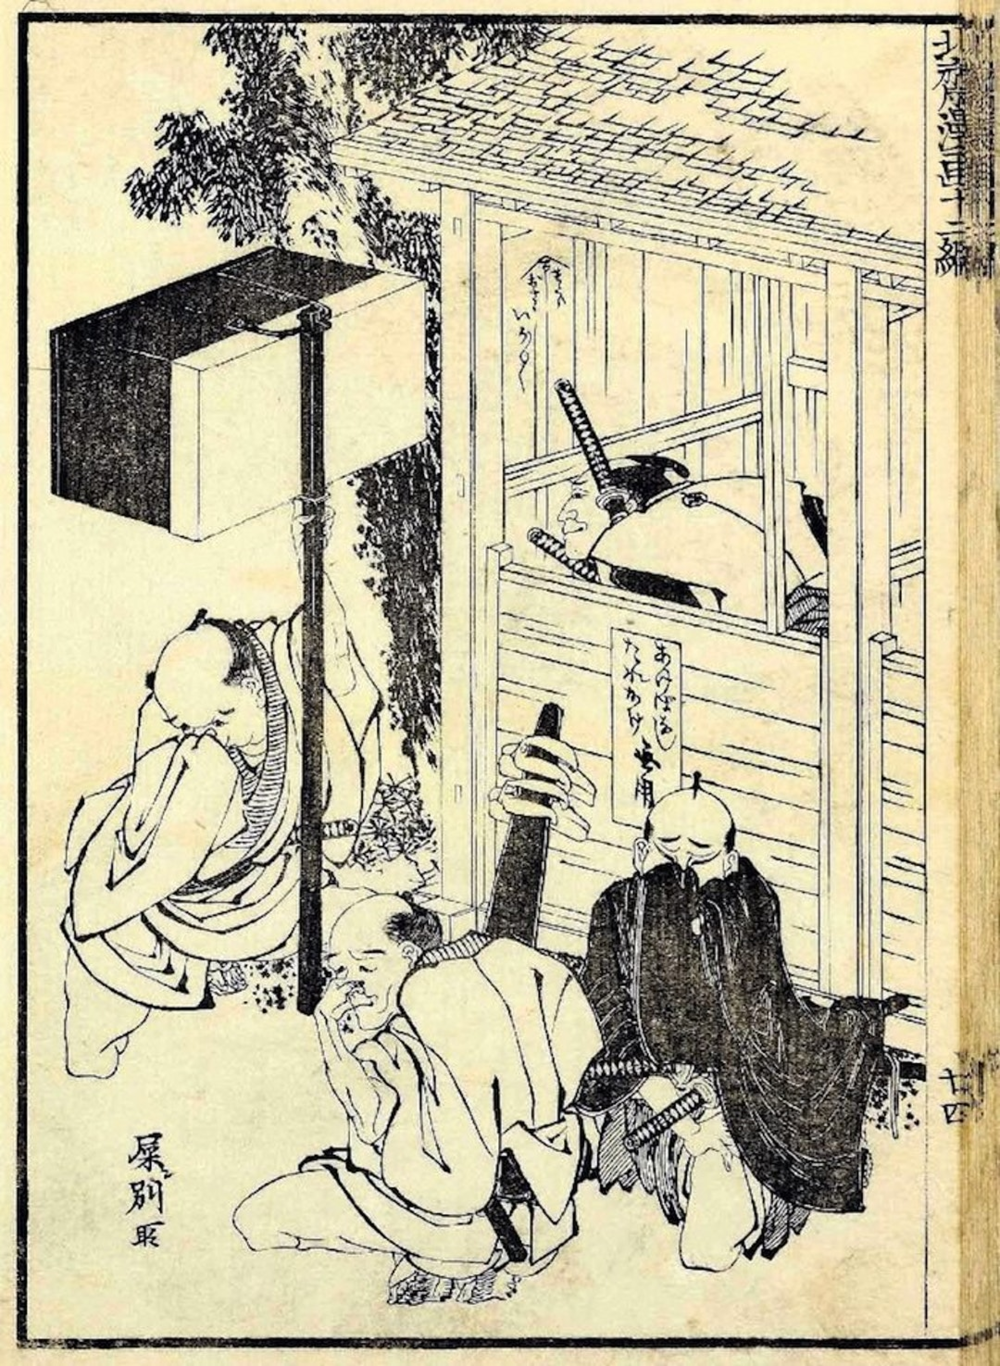 浮世绘也是批判的武器。北斋漫画中，作者用武士拉屎平民闻味的漫画，表现了对阶级固化的不满。